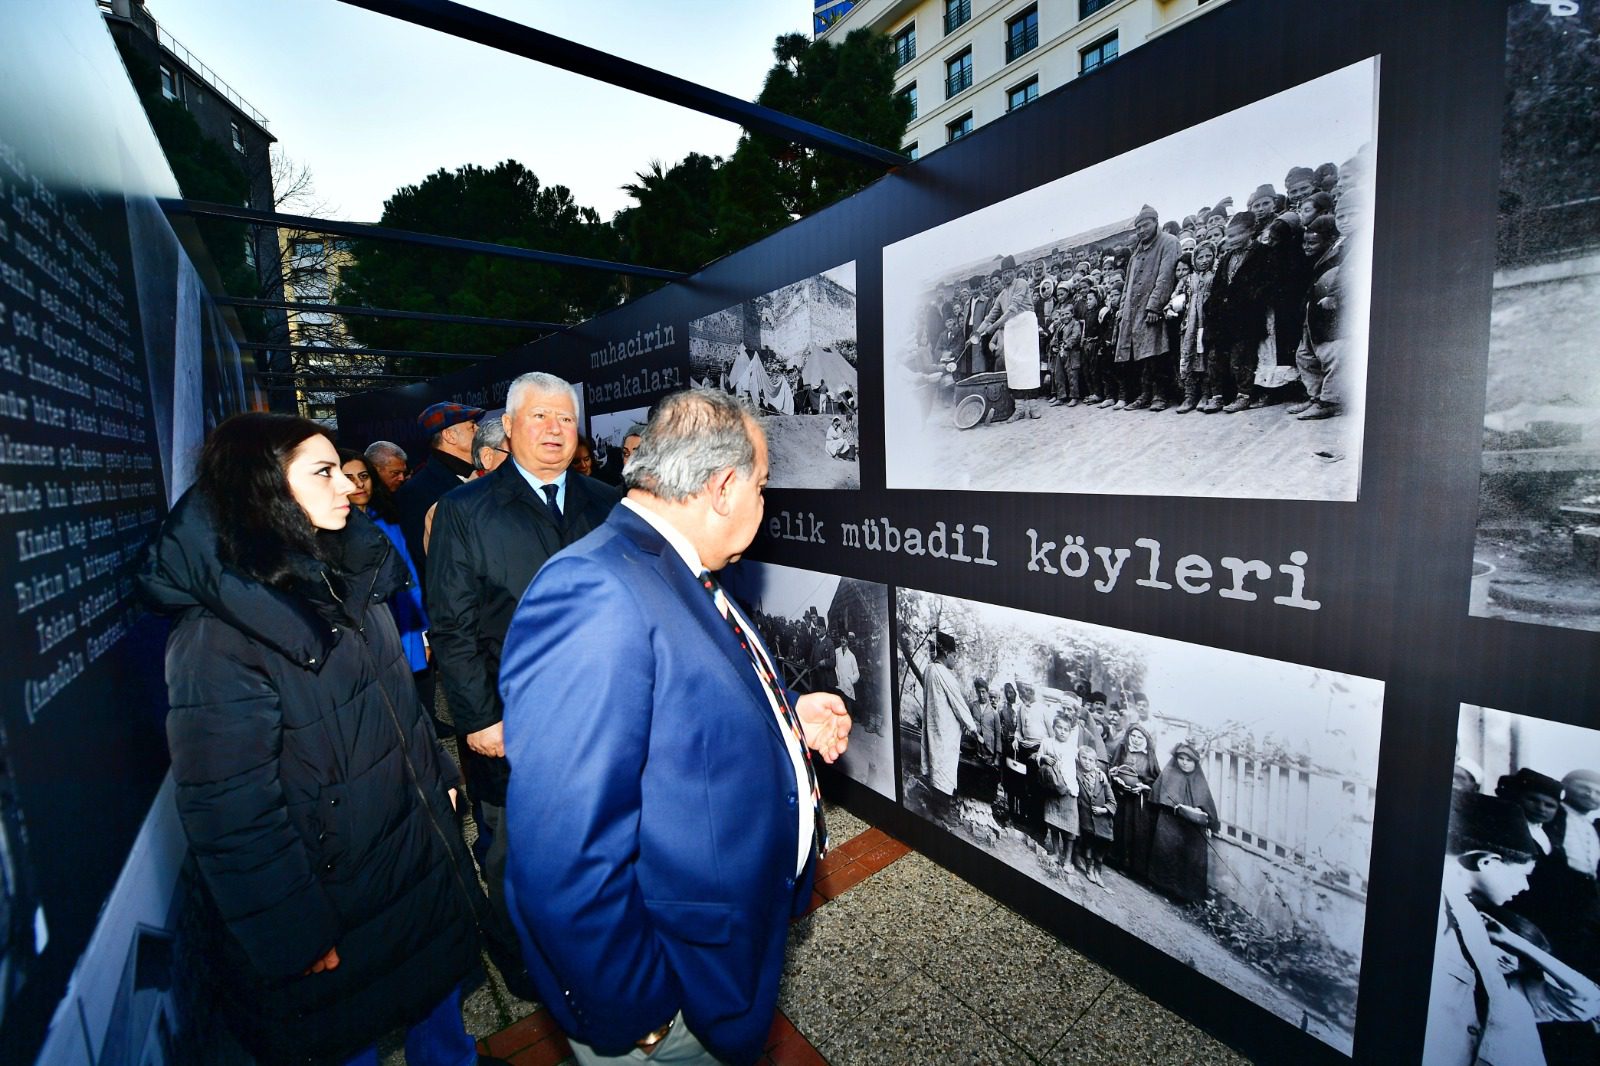 Mustafa Özuslu <p>İzmir Büyükşehir Belediyesi tarafından mübadelenin 100'üncü yıldönümünü anmak için düzenlenen etkinlikler kapsamında “Hatırlıyorum” yürüyüşü ve “Koridor” enstalasyonunun açılışı yapıldı. Mübadeleyi yaşamış ailelerin fotoğraf, ses ve görüntülerine yer verilen enstalasyon, 10 Şubat’a kadar ziyaret edilebilecek. İzmir Büyükşehir Belediyesi, 30 Ocak 1923’te Türkiye ile Yunanistan arasında yapılan mübadele anlaşmasının 100’üncü yıldönümü etkinlikleri kapsamında “Hatırlıyorum” yürüyüşü düzenledi. Mübadeleye dair hafıza mekânlardan biri olan Pasaport Gümrük'ten başlayıp, Ahmet Piriştina Kent Arşivi ve Müzesi’nde (APİKAM) son bulan hafıza yürüyüşüne İzmir Büyükşehir Belediyesi Başkan Vekili Mustafa Özuslu, İzmir Büyükşehir Belediyesi Genel Sekreter Yardımcısı Ertuğrul Tugay, İzmir Kent Konseyi Başkanı Nilay Kökkılınç, İzmir Milli Kütüphane Vakfı Başkanı Ulvi Puğ ile İzmirli yurttaş ve mübadiller katıldı. Yürüyüşün ardından APİKAM bahçesinde kurulan "Koridor" enstalasyonunun açılışı yapıldı. Mübadeleyi yaşamış ailelerin fotoğraf, ses ve görüntülerine yer verilen hafıza mekânı katılımcılara duygu dolu anlar yaşattı.</p>
<p>“Acısını sadece yaşayanlar”
10 Şubat’a kadar ziyaret edilebilecek enstalasyonun açılışında konuşan İzmir Büyükşehir Belediyesi Başkan Vekili Mustafa Özuslu, “Bazı tarihi olaylar üzerimizde kalıcı etki yaratır. Dünya tarihindeki en önemli olaylardan biri de hiç kuşkusuz Birinci Dünya Savaşı ve onun mühim sonuçlarından biri mübadele olmuştur. Nüfus değişimleri dramdır, büyük yara izleri kalır. Yerinden yurdundan ayrılmanın, vatanından uzak kalmanın acısını sadece yaşayanlar bilir. Bizler bir arada yaşamanın önemini daha iyi anlamalıyız. Toplum olarak birlikte yaşamaya, huzura ihtiyacımız var. Kavgalar acılarımızı körüklüyor. Birlikte kardeşçe bir arada yaşayabiliriz” dedi.</p>
<p>“Bilinç oluşturmak gerek”
Dr. Erkan Serçe ise 19’uncu yüzyılın sonlarından itibaren travmatik bir gelişme olarak mübadelenin karşımıza çıktığını belirterek “Mübadelenin tarihsel kökenlerinin yanı sıra insani yönü var. Yer değiştiren insanlar misafir olarak kaldıkları yerleri değil, doğup büyüdükleri yerleri bıraktılar. O güne kadar yaşadıkları yerlerde yabancı görünenler gittikleri yerlerde de yabancı oldular. Bu Türkiye’de de Yunanistan’da da yaşandı. Ama şimdi 3’üncü kuşak, kökenini aramaya çalışıyor. Bundan sonra bu olayların bir daha tekrarlanmaması için ayrımcılığı ortadan kaldırmaya yönelik bilinç oluşturmak gerek” şeklinde konuştu.</p>